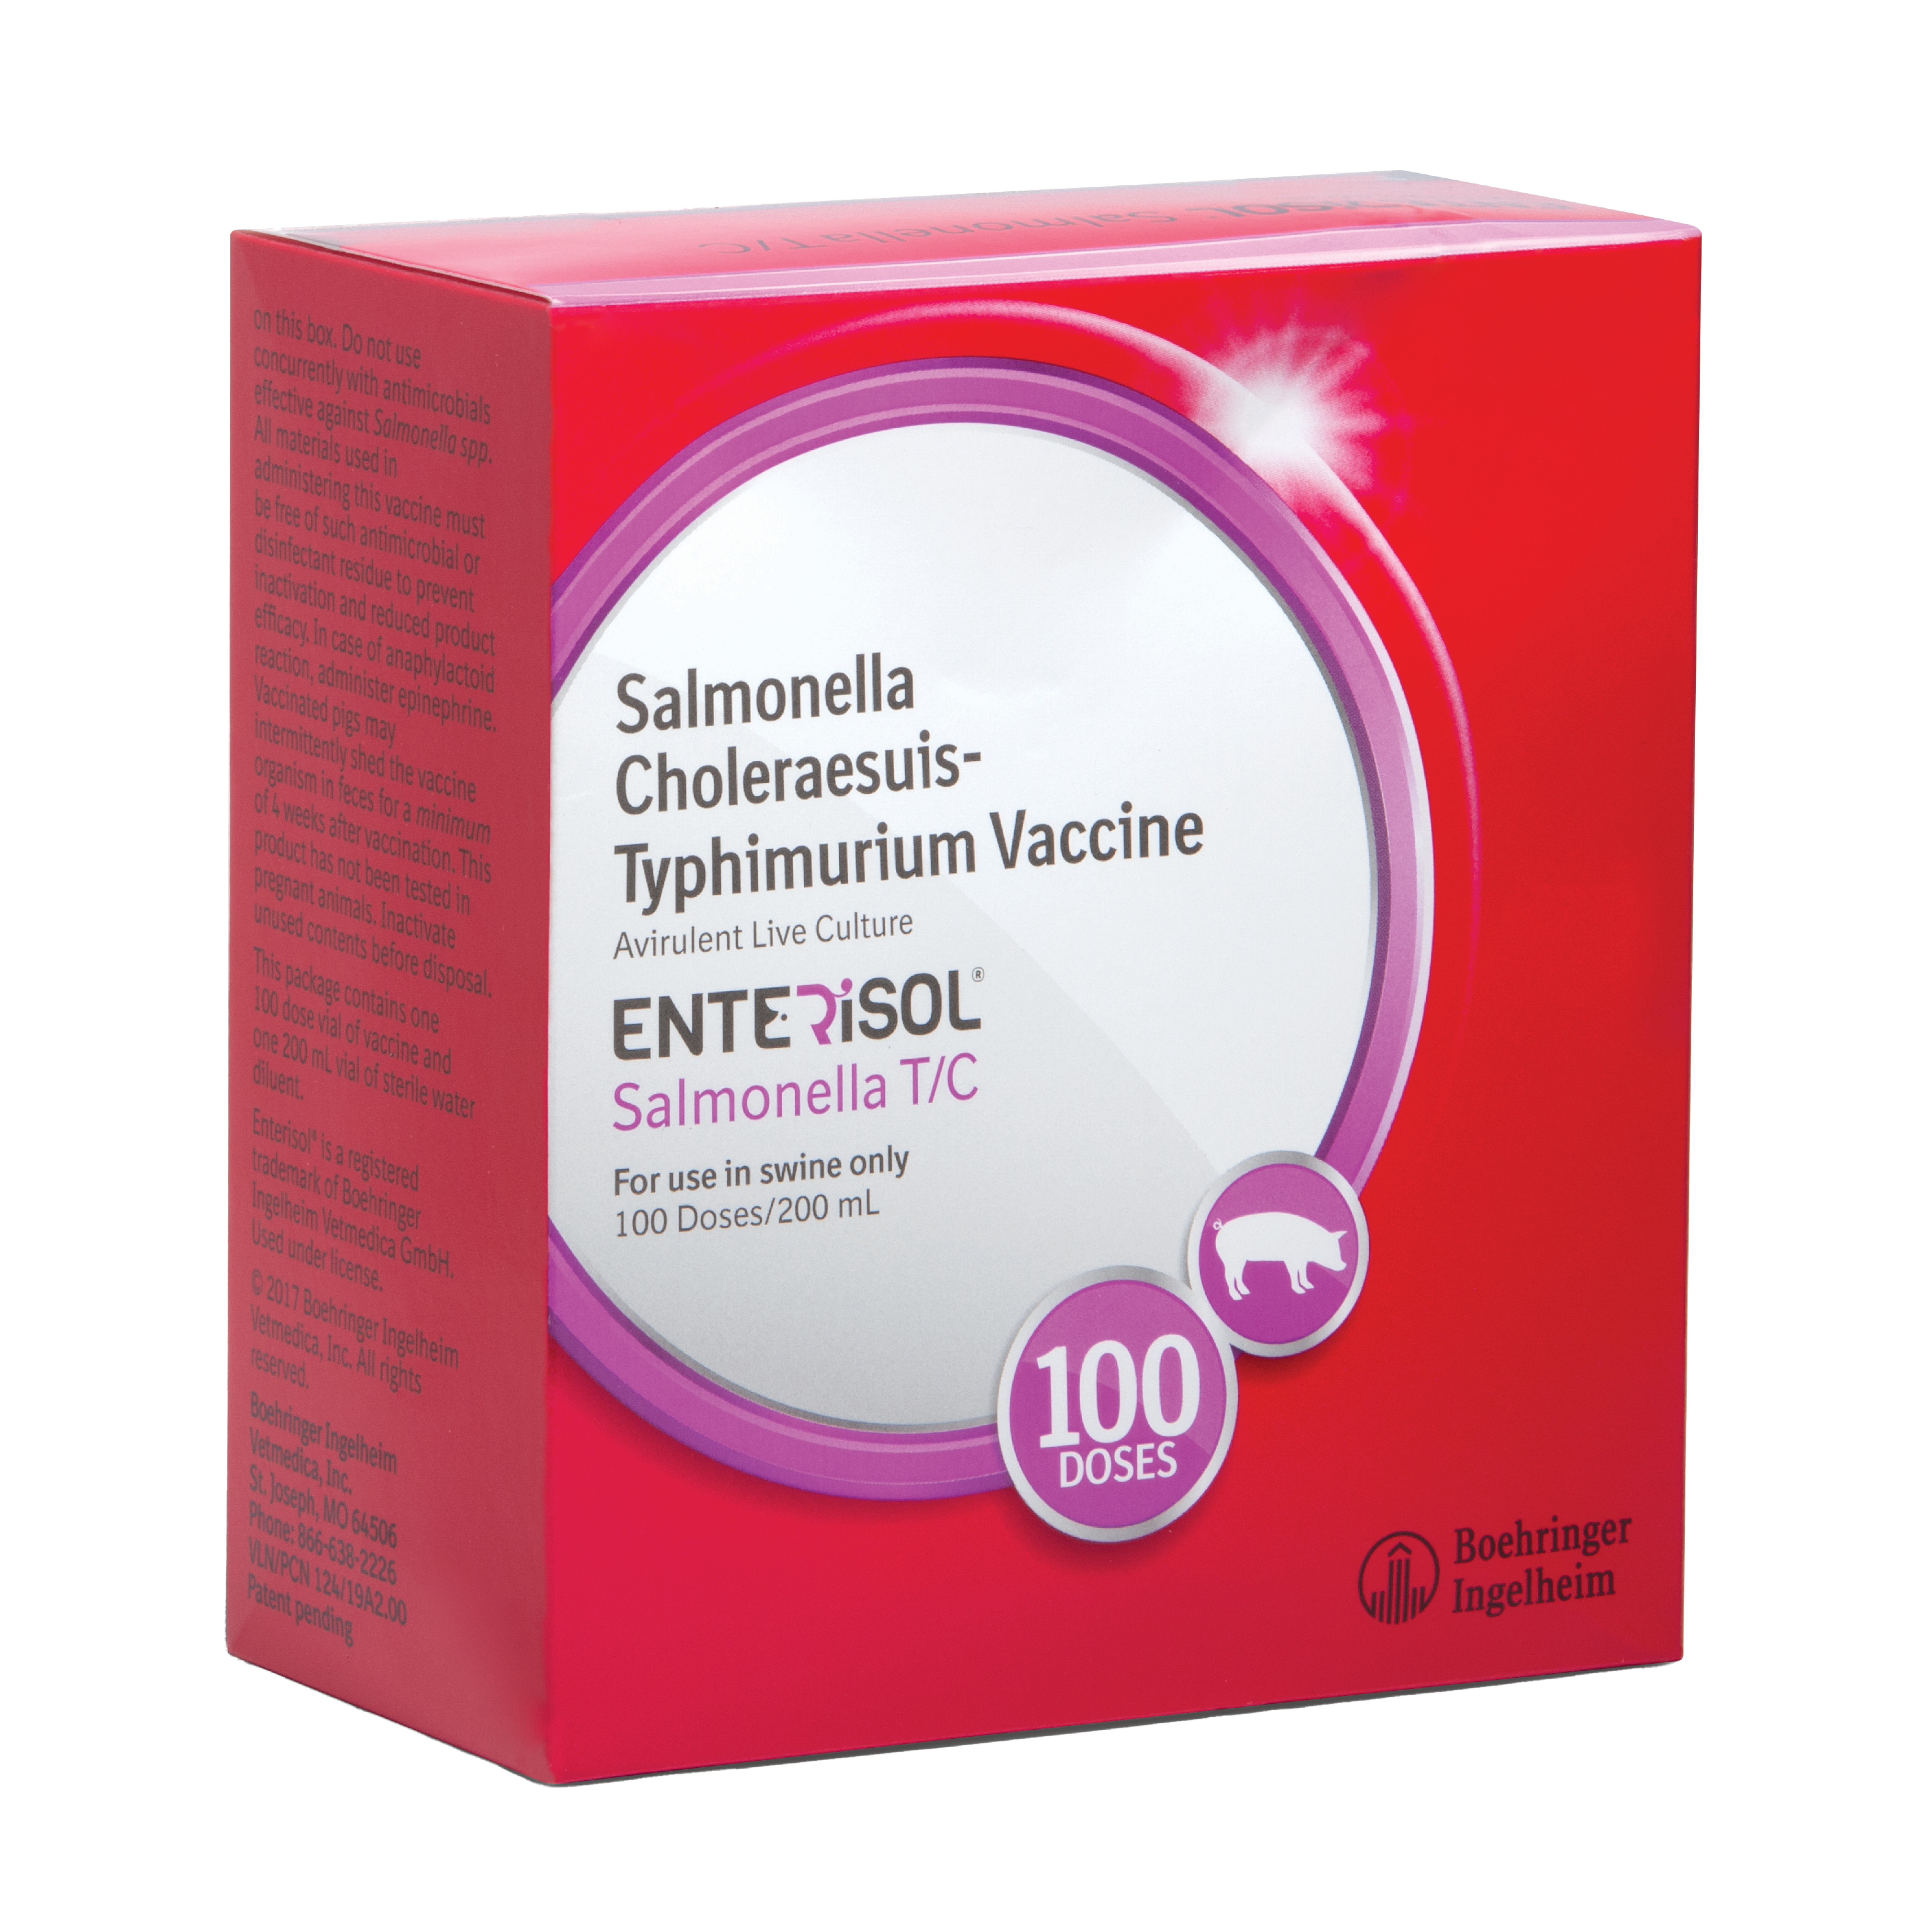 Enterisol Salmonella T/C (Non-Frozen)